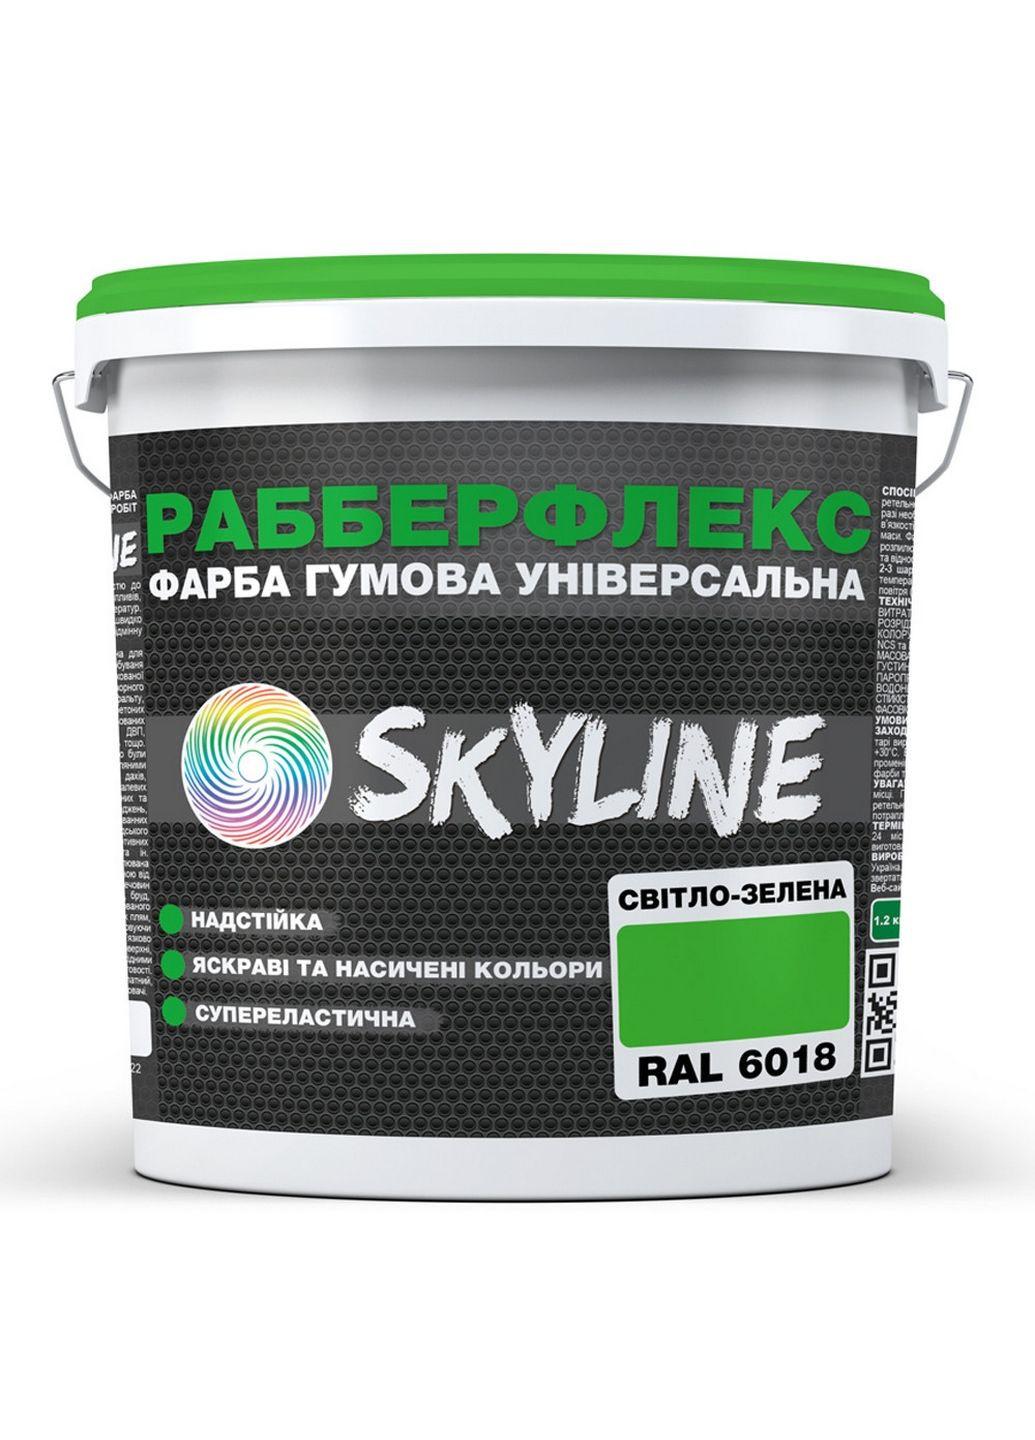 Краска резиновая суперэластичная сверхстойкая «РабберФлекс» 3,6 кг SkyLine (289459218)